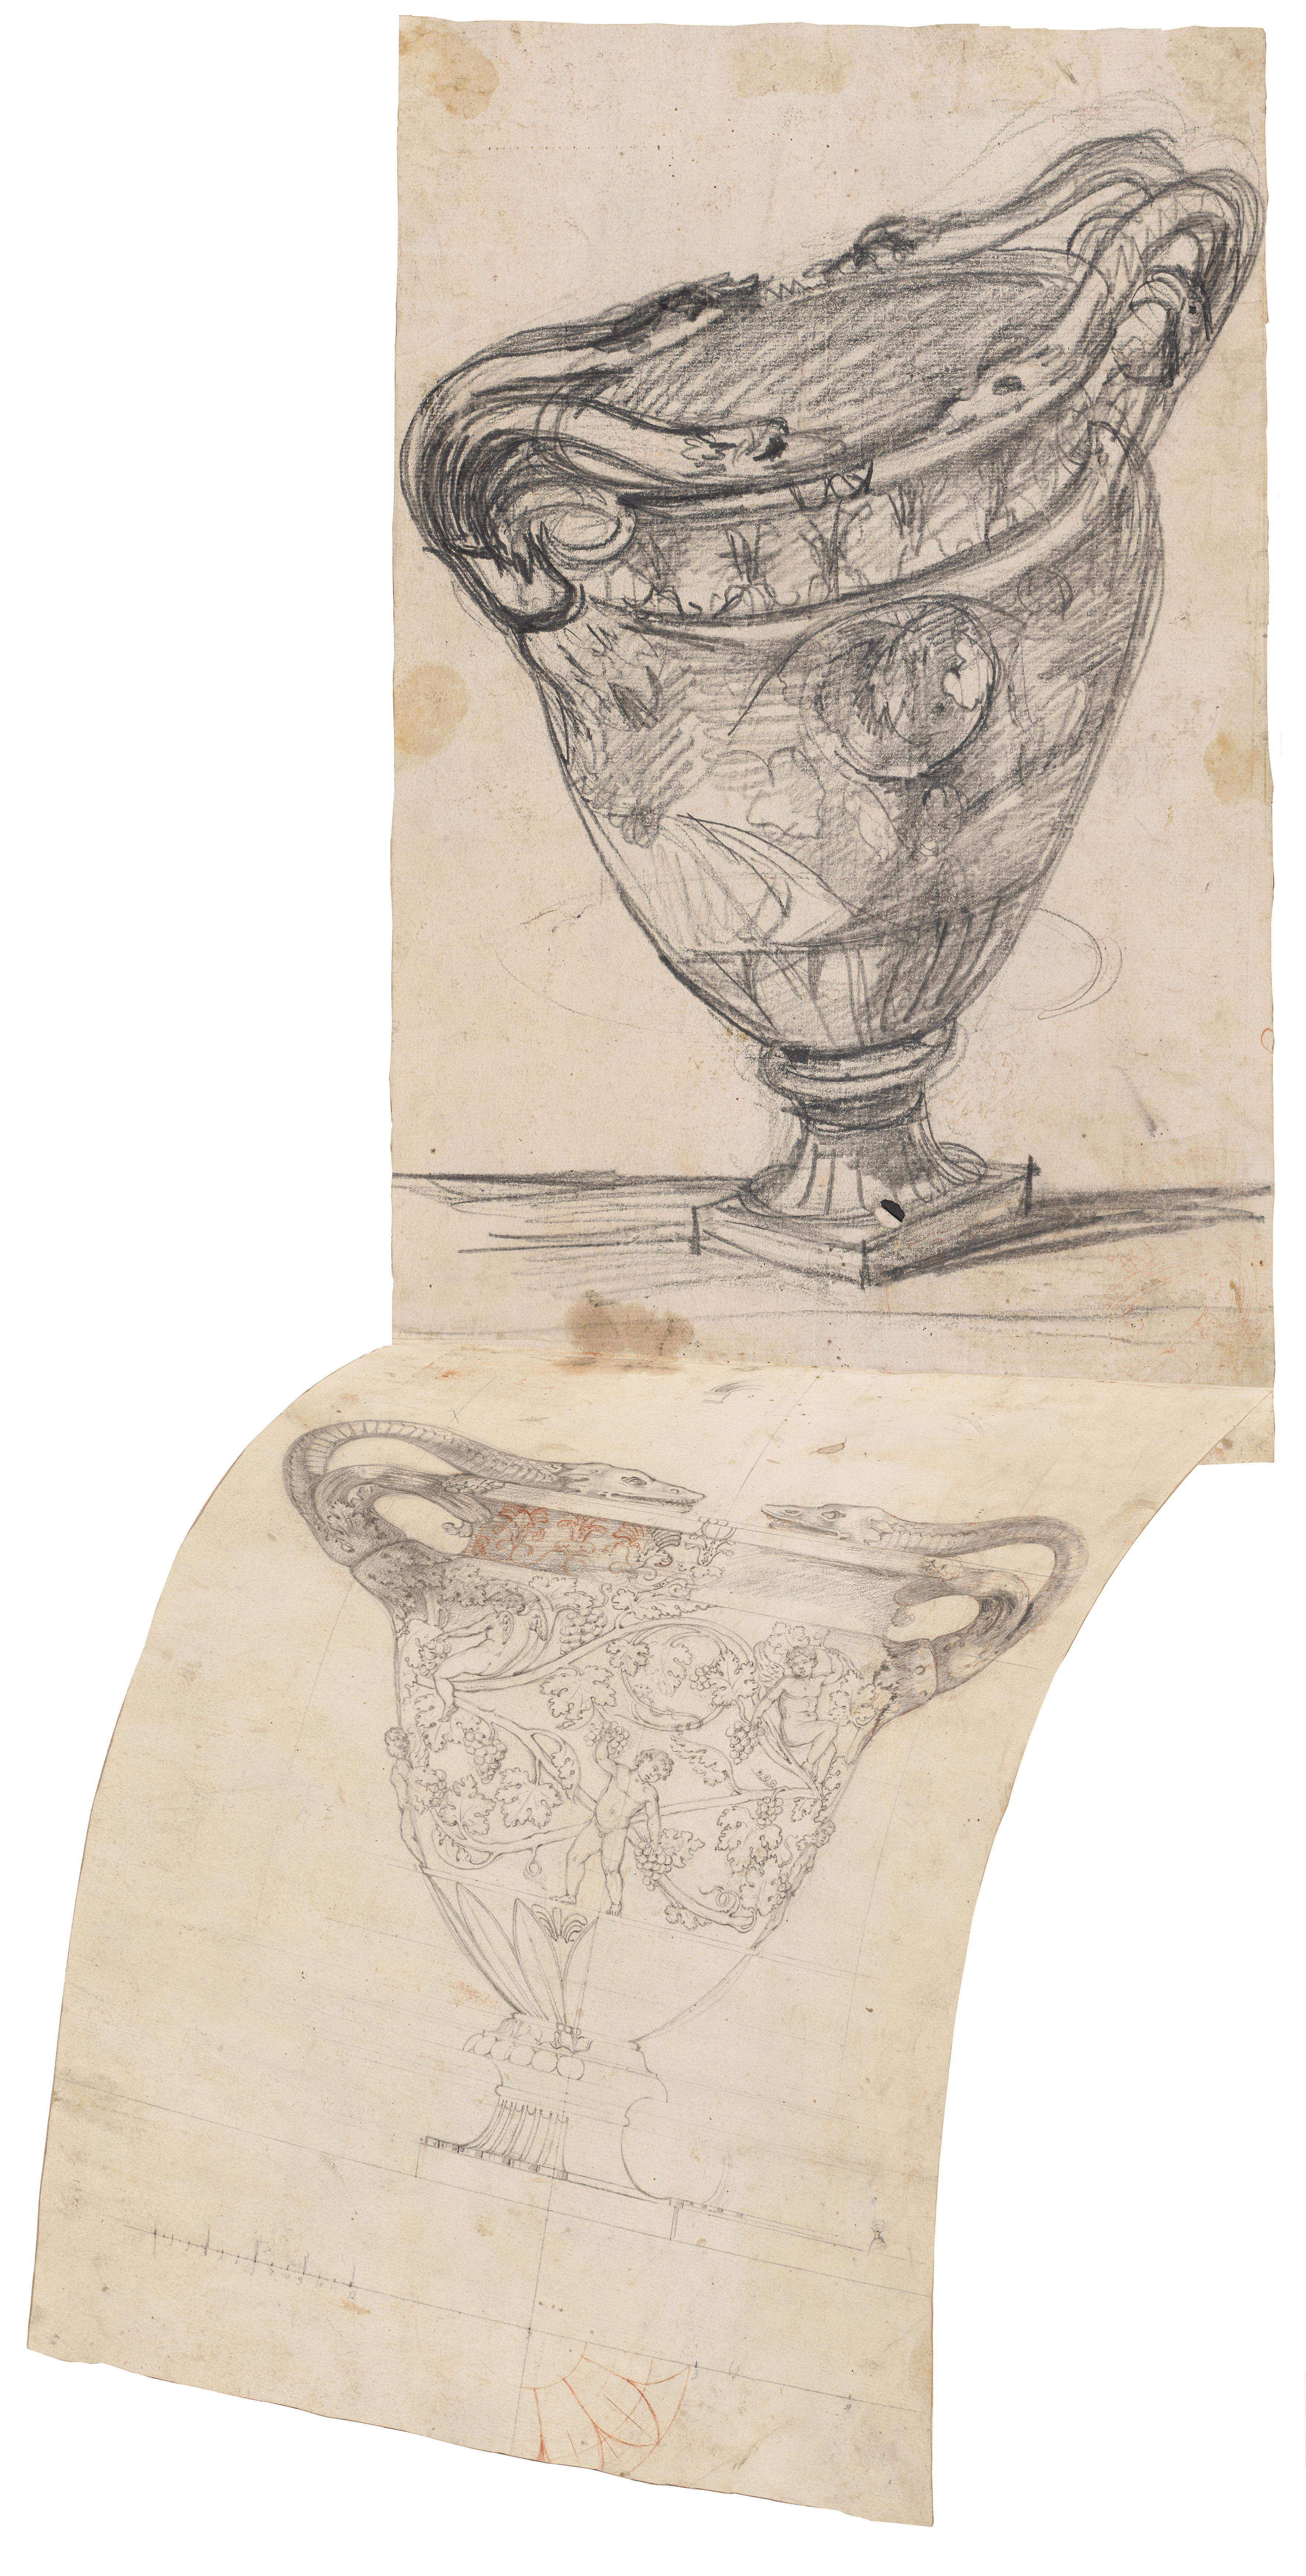 Bildmontage aus den zwei Zeichnungen der Stowe-Vase